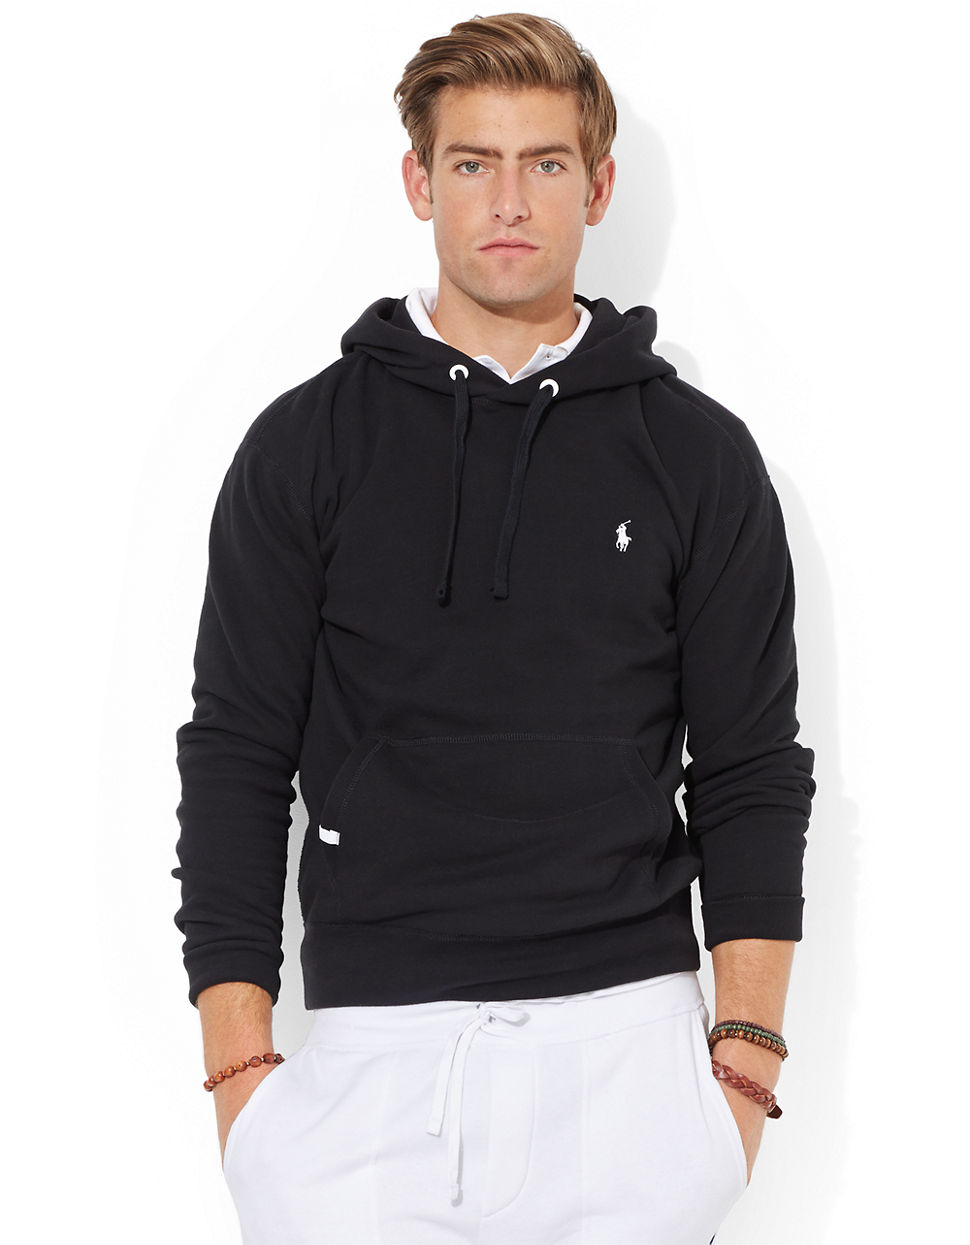 Polo Ralph Lauren Solid Fleece Hoodie in Black for Men - Lyst